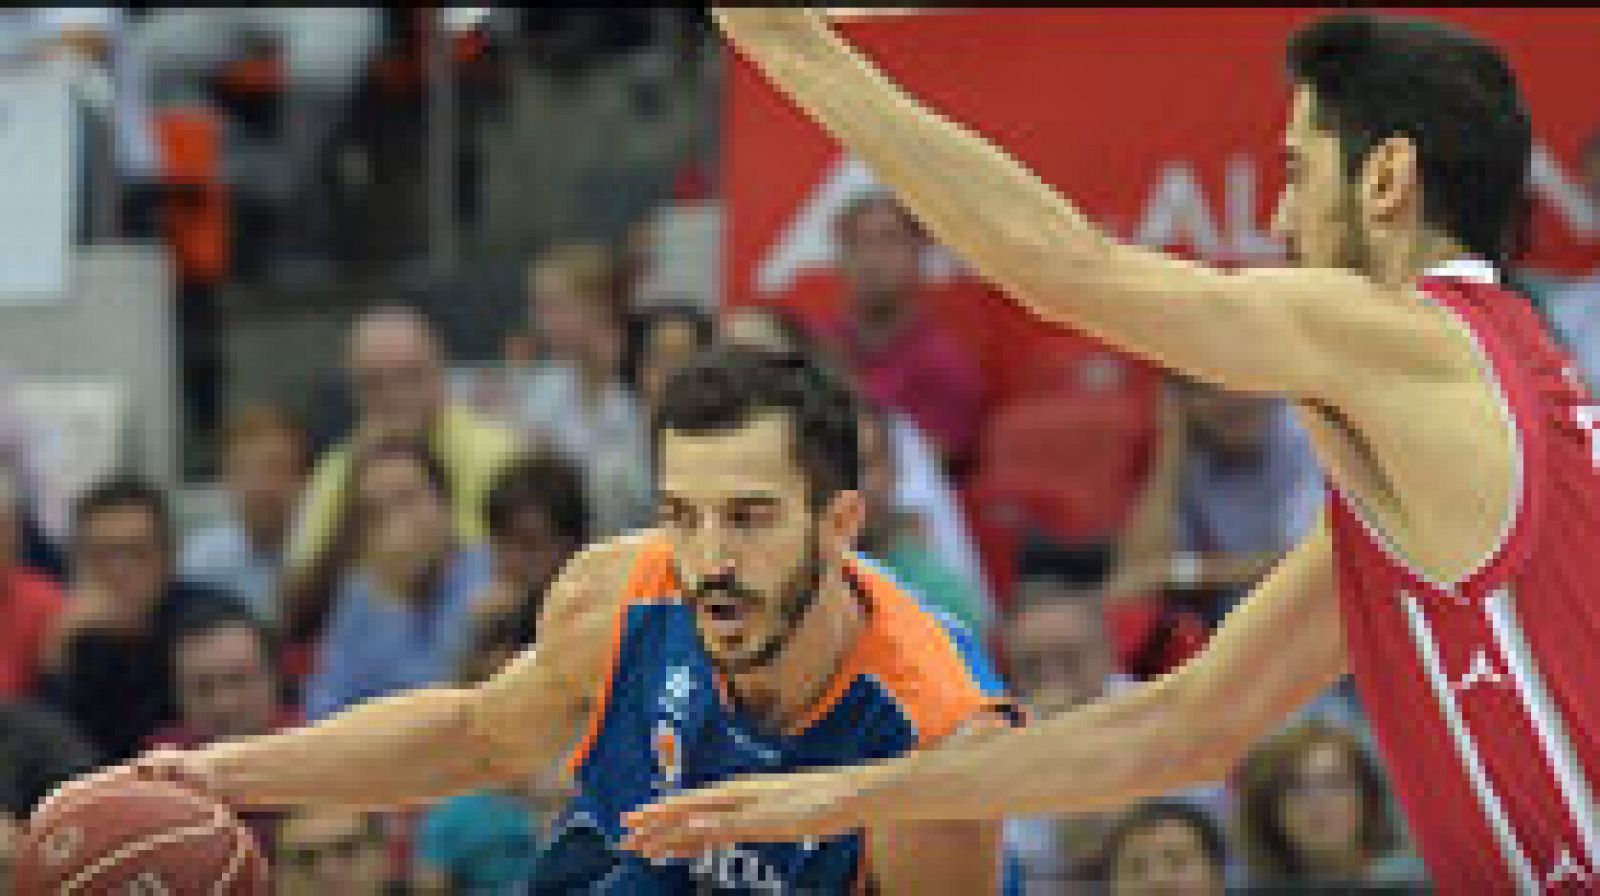 El Valencia Basket rompió el gafe que le perseguía en el pabellón Príncipe Felipe de Zaragoza donde se impuso al CAI Zaragoza (69-77) después de haber perdido en sus últimas cuatro visitas anteriores.